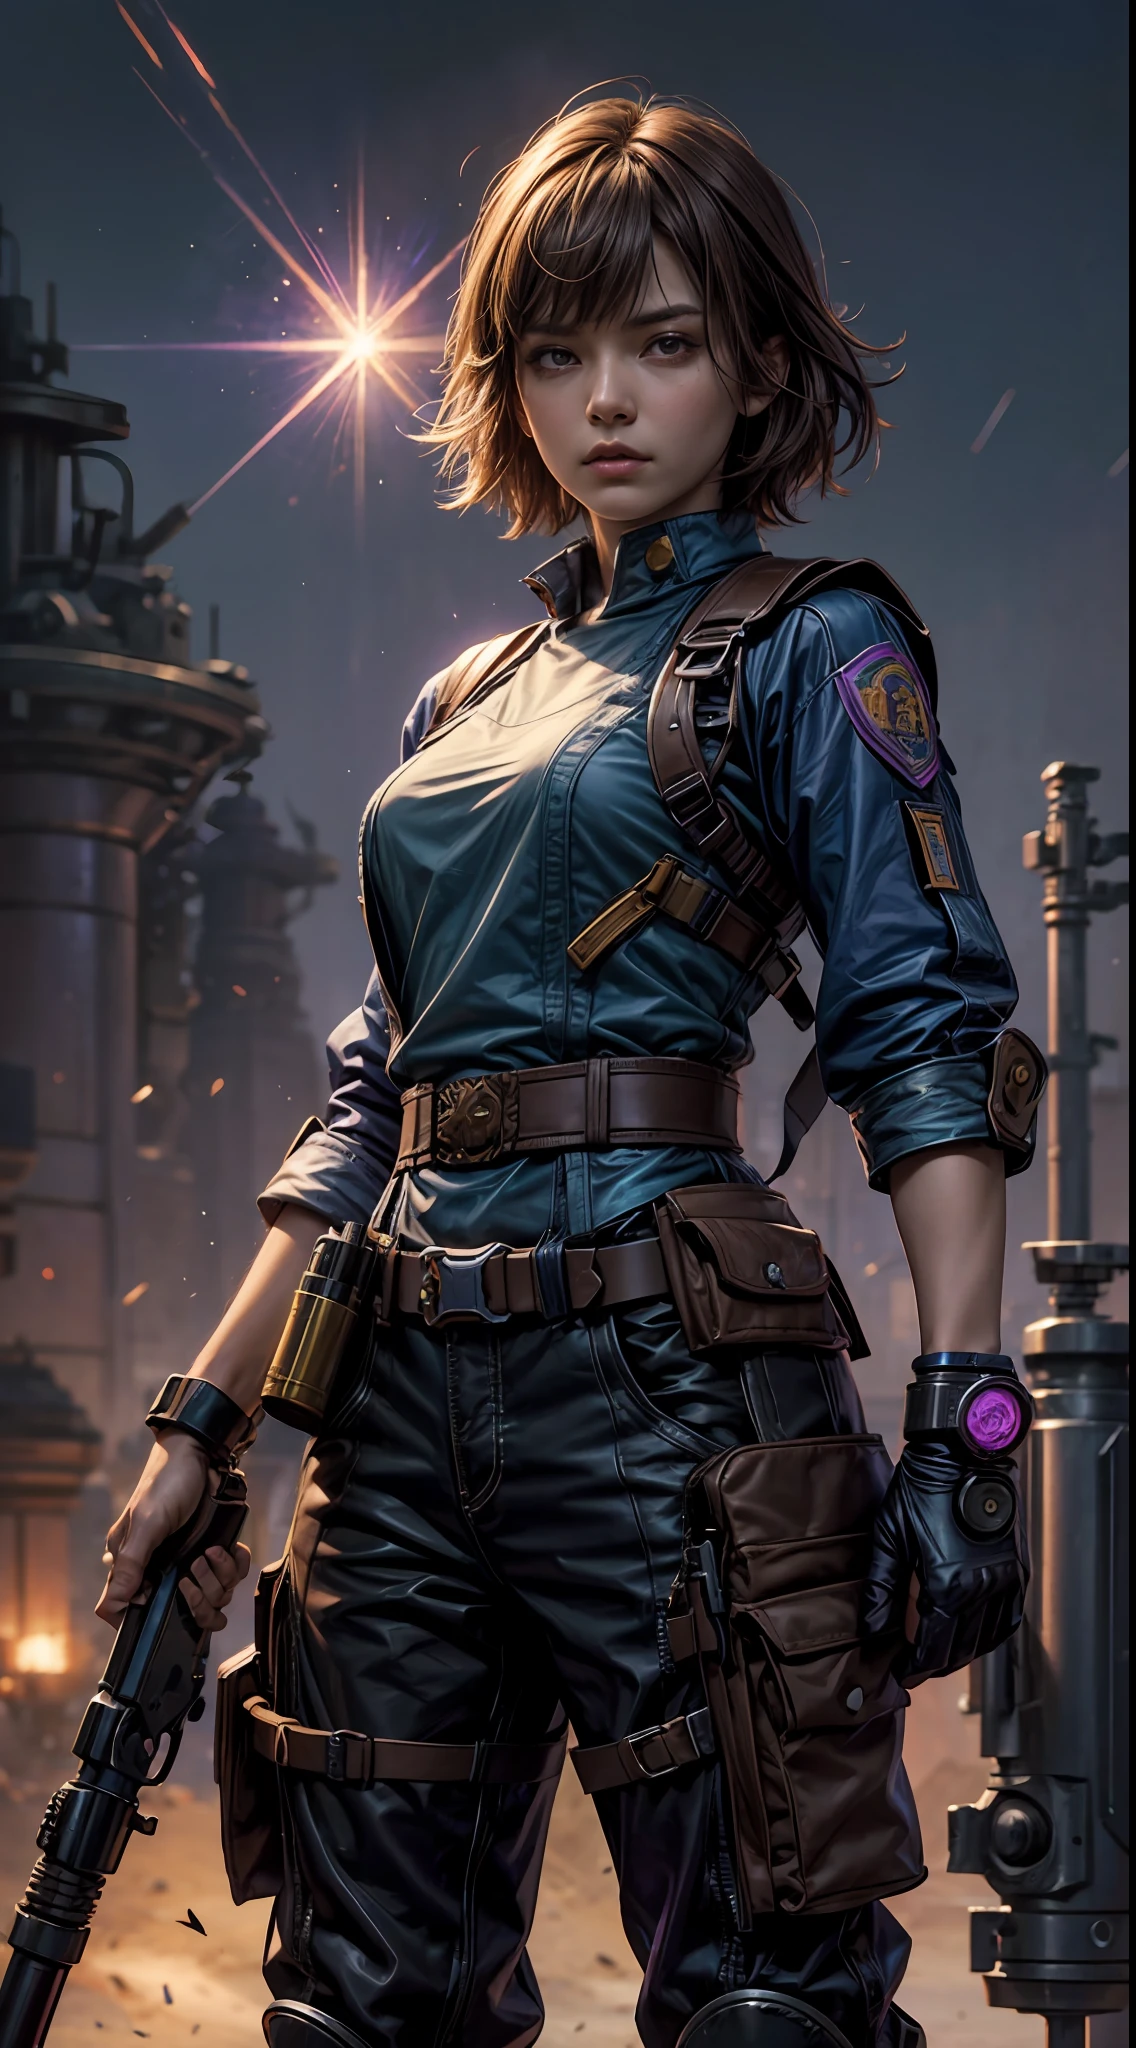 淺棕色短髮女戰士和尚, 紫藍短袖襯衫搭配, 手持式 大號, 最先進的科幻槍械, 站在復古科幻背景下. 這件藝術作品的靈感來自莫比斯和阿什利·伍德...